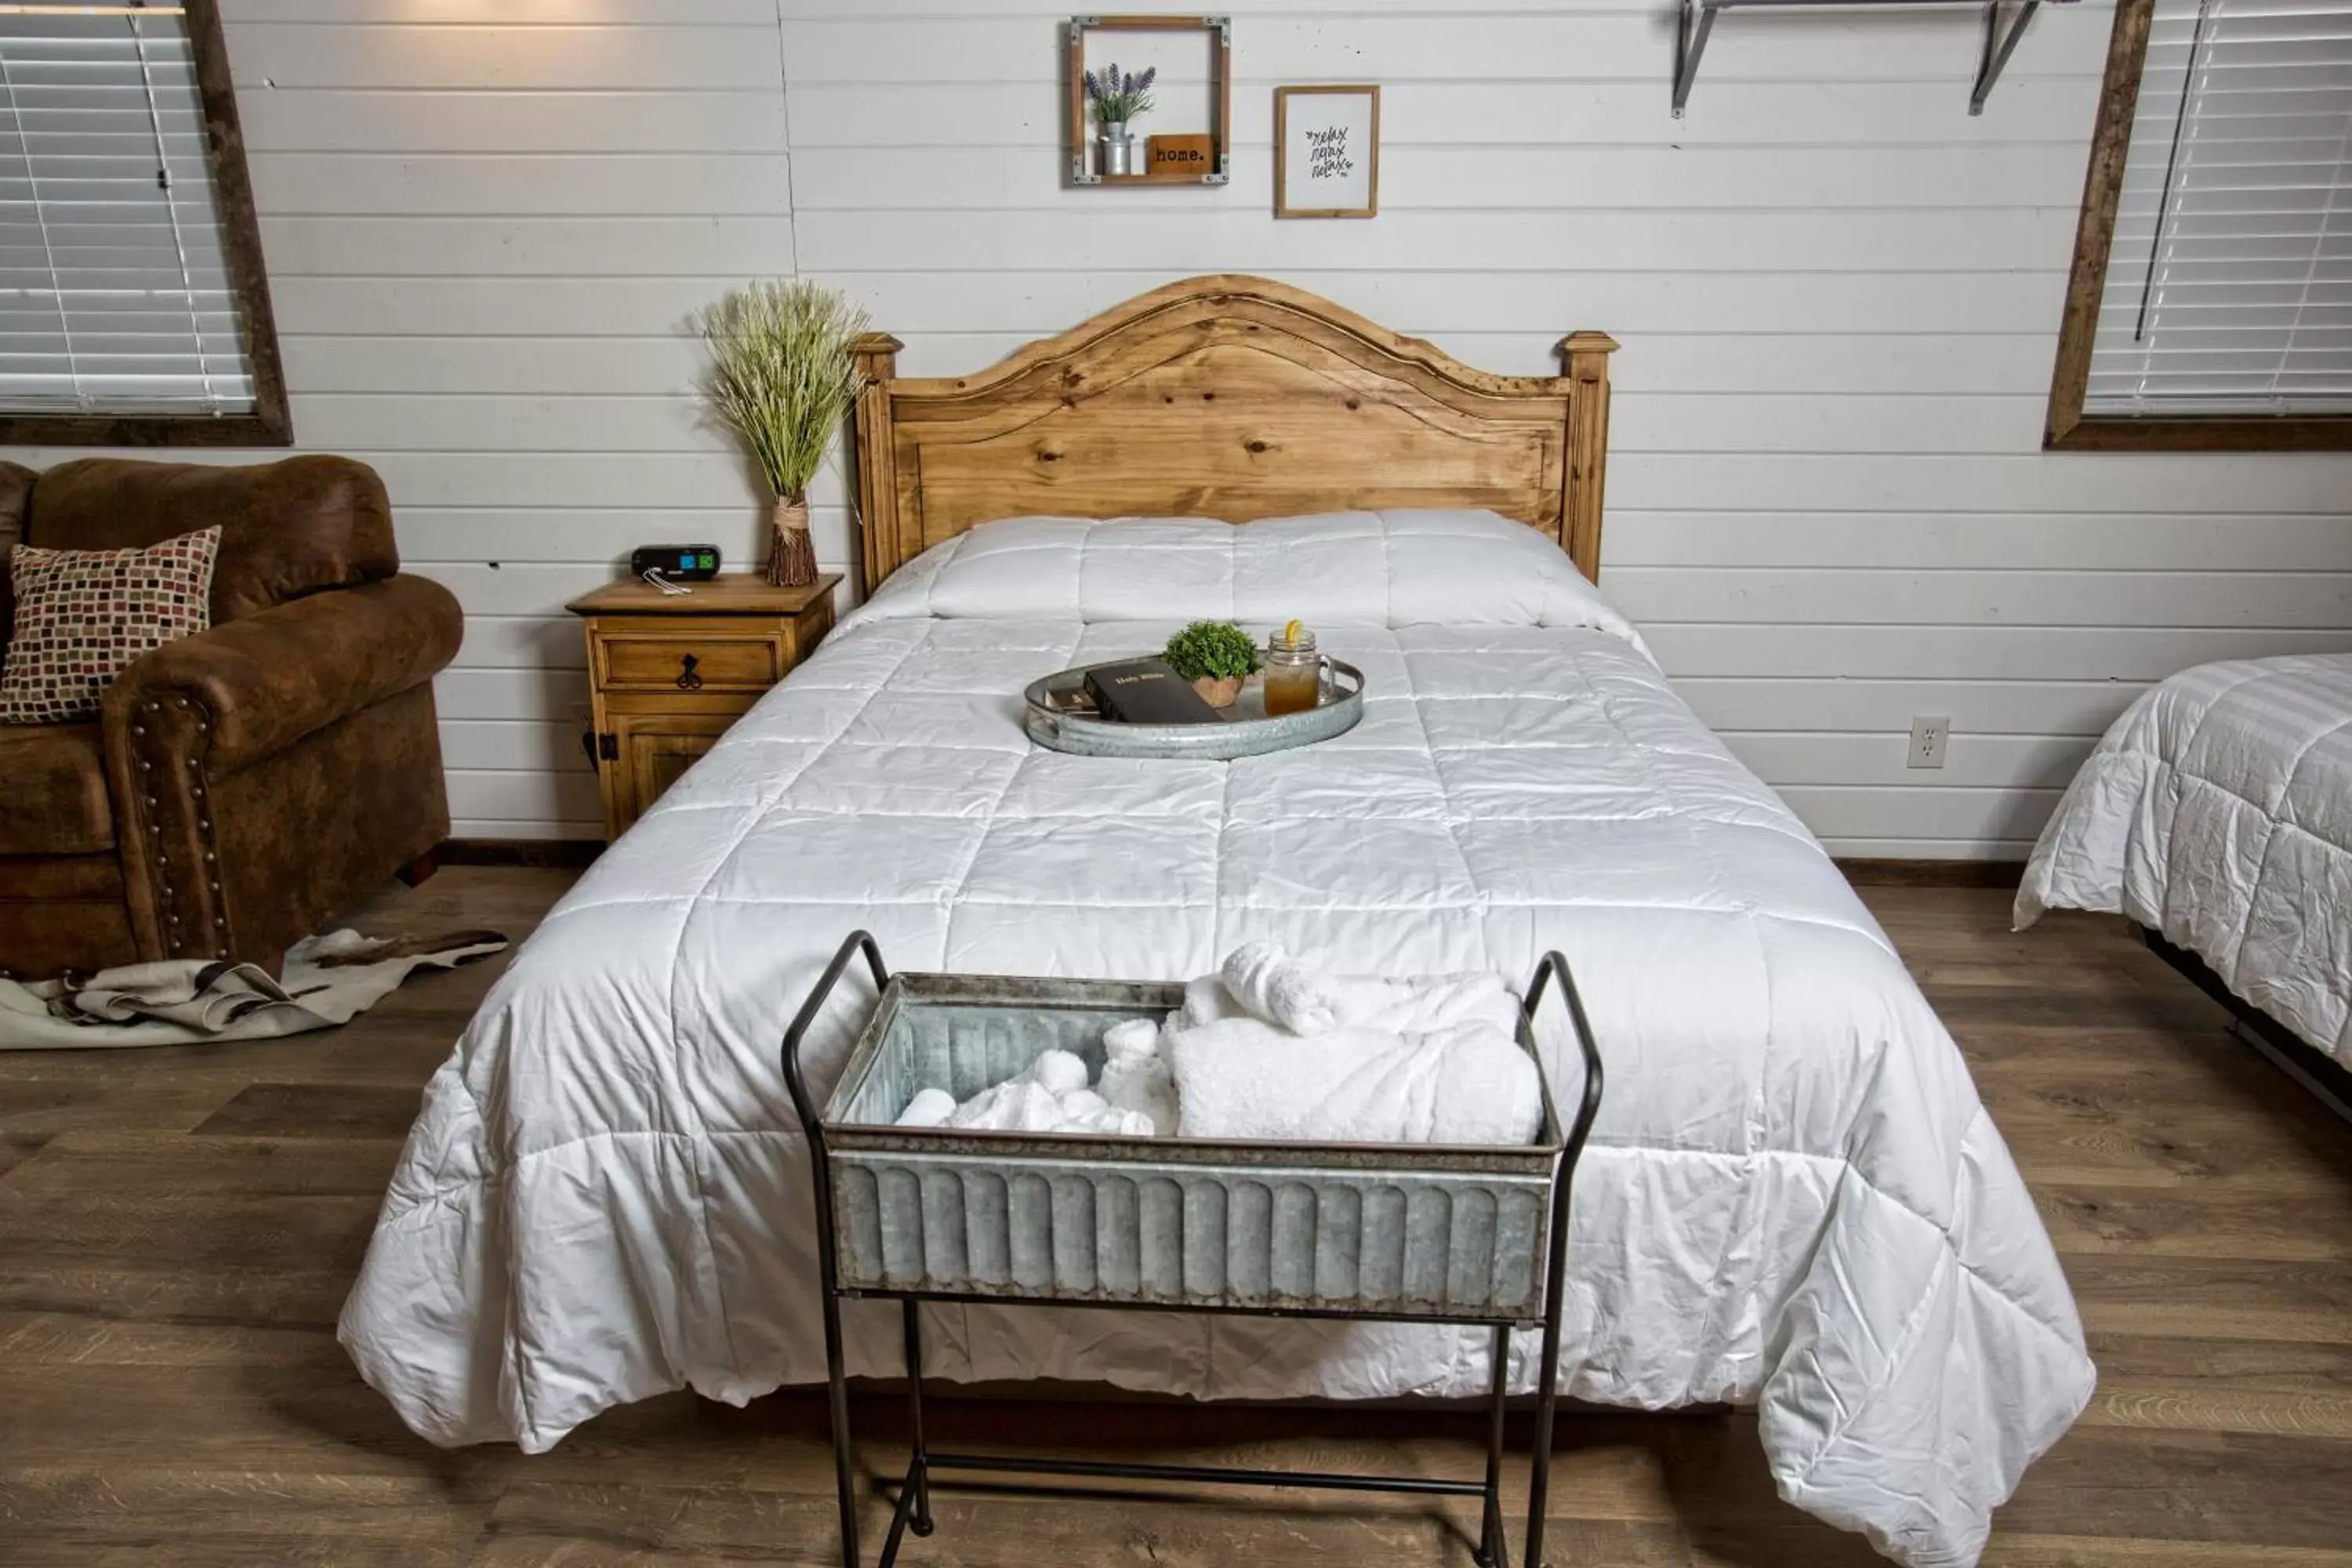 Bed in Stateline Cabin